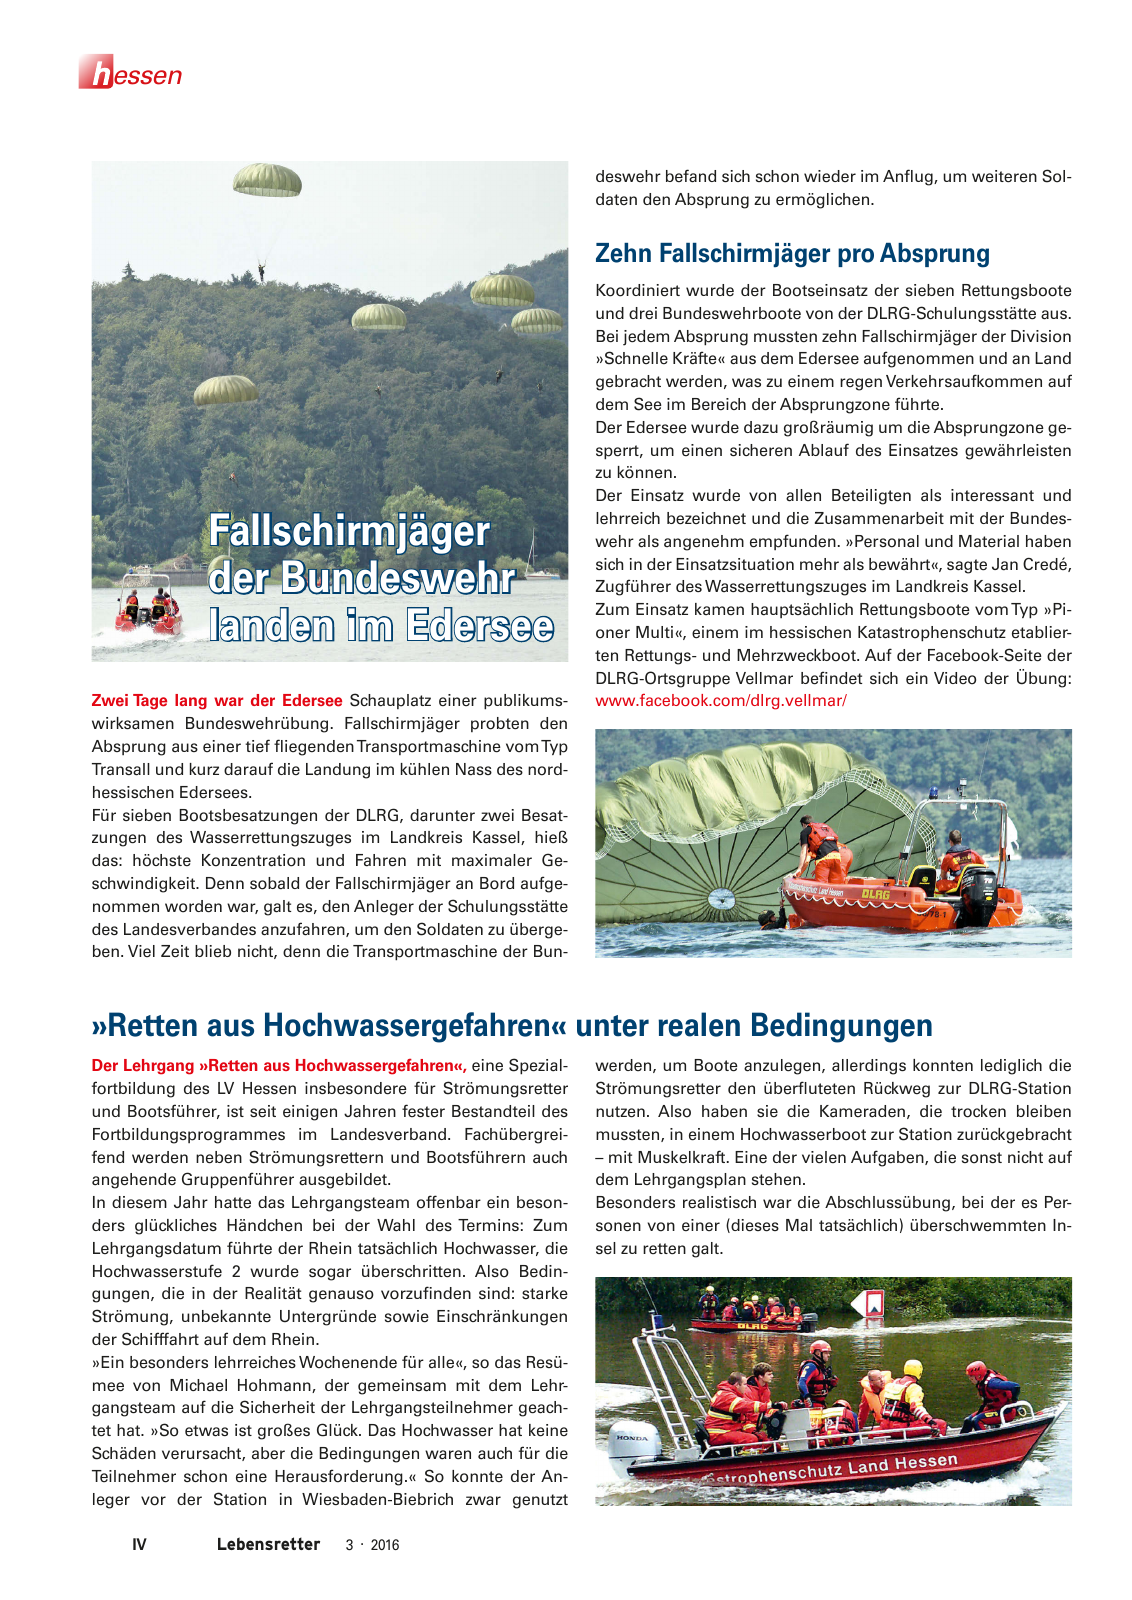 Vorschau Lebensretter 3/2016 - Regionalausgabe Hessen Seite 6